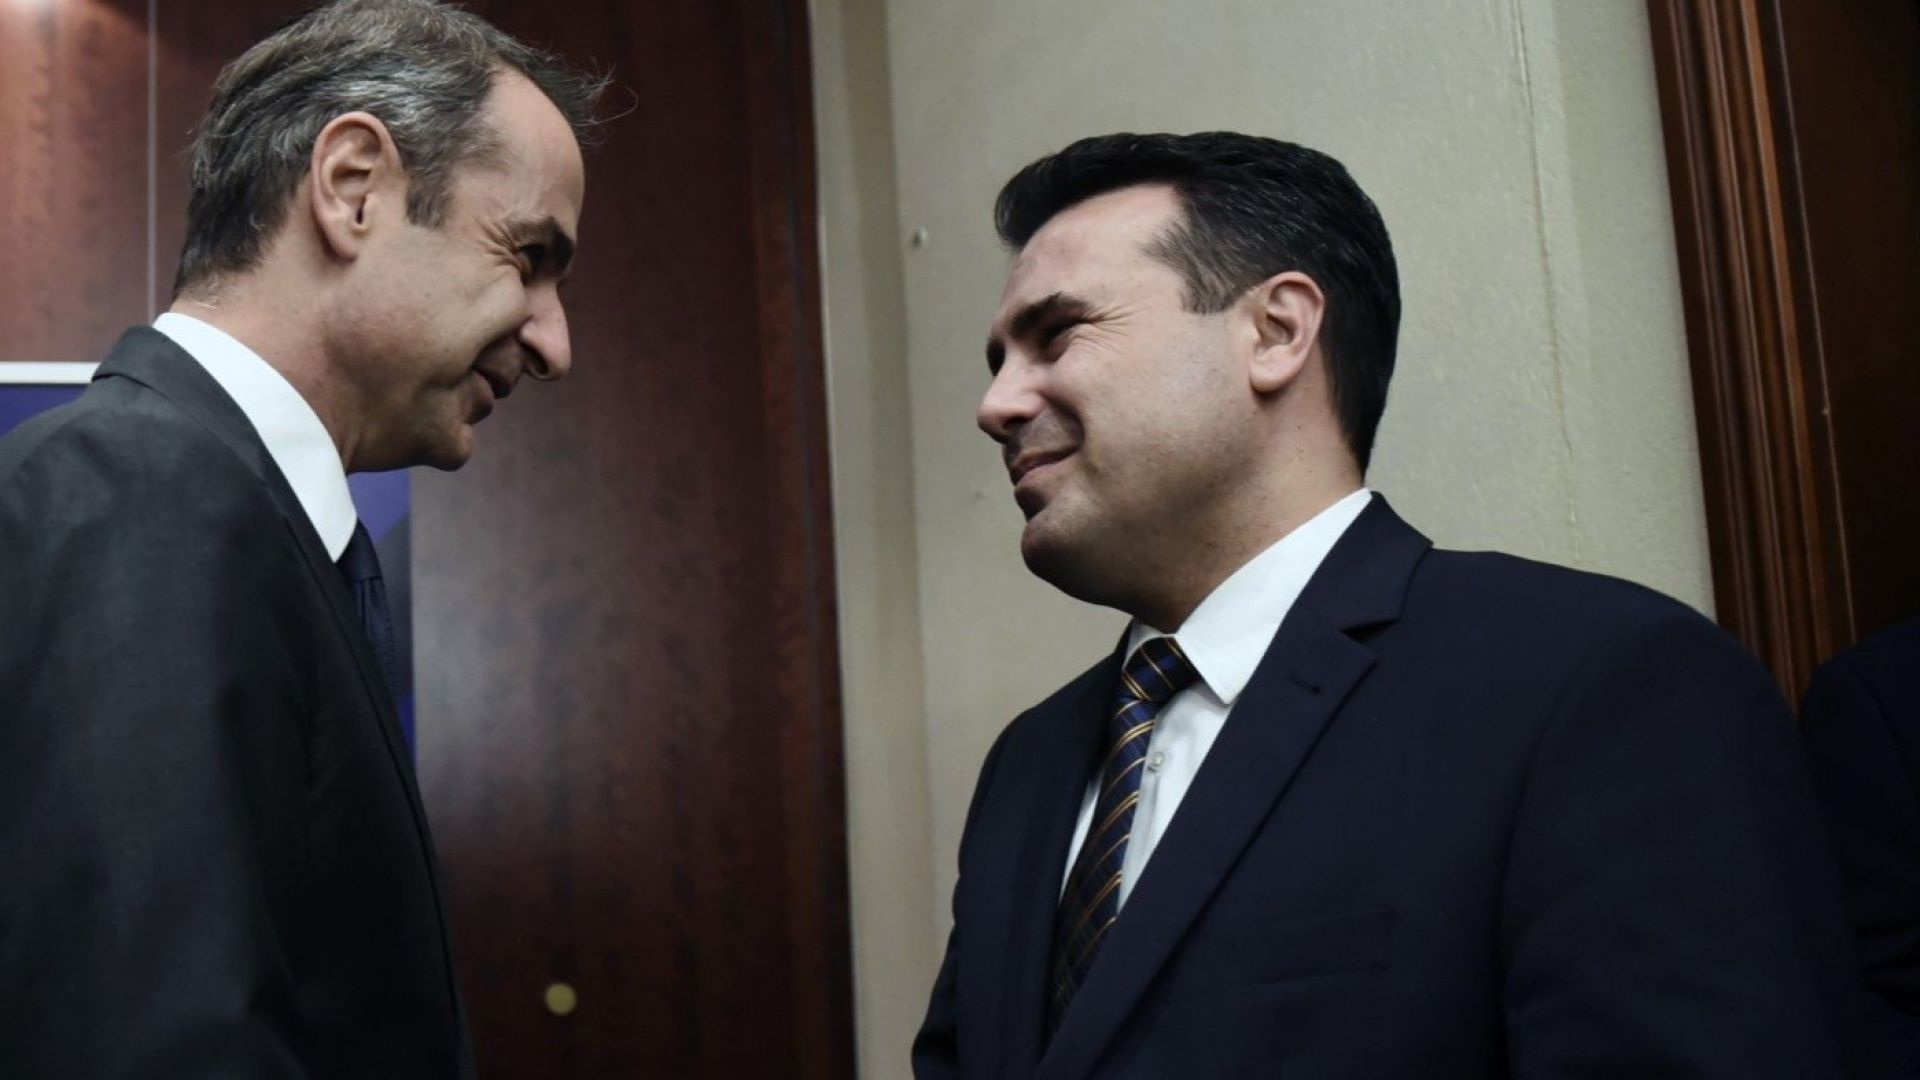 Гръцкият премиер Кириакос Мицотакис представил на срещата на високо равнище